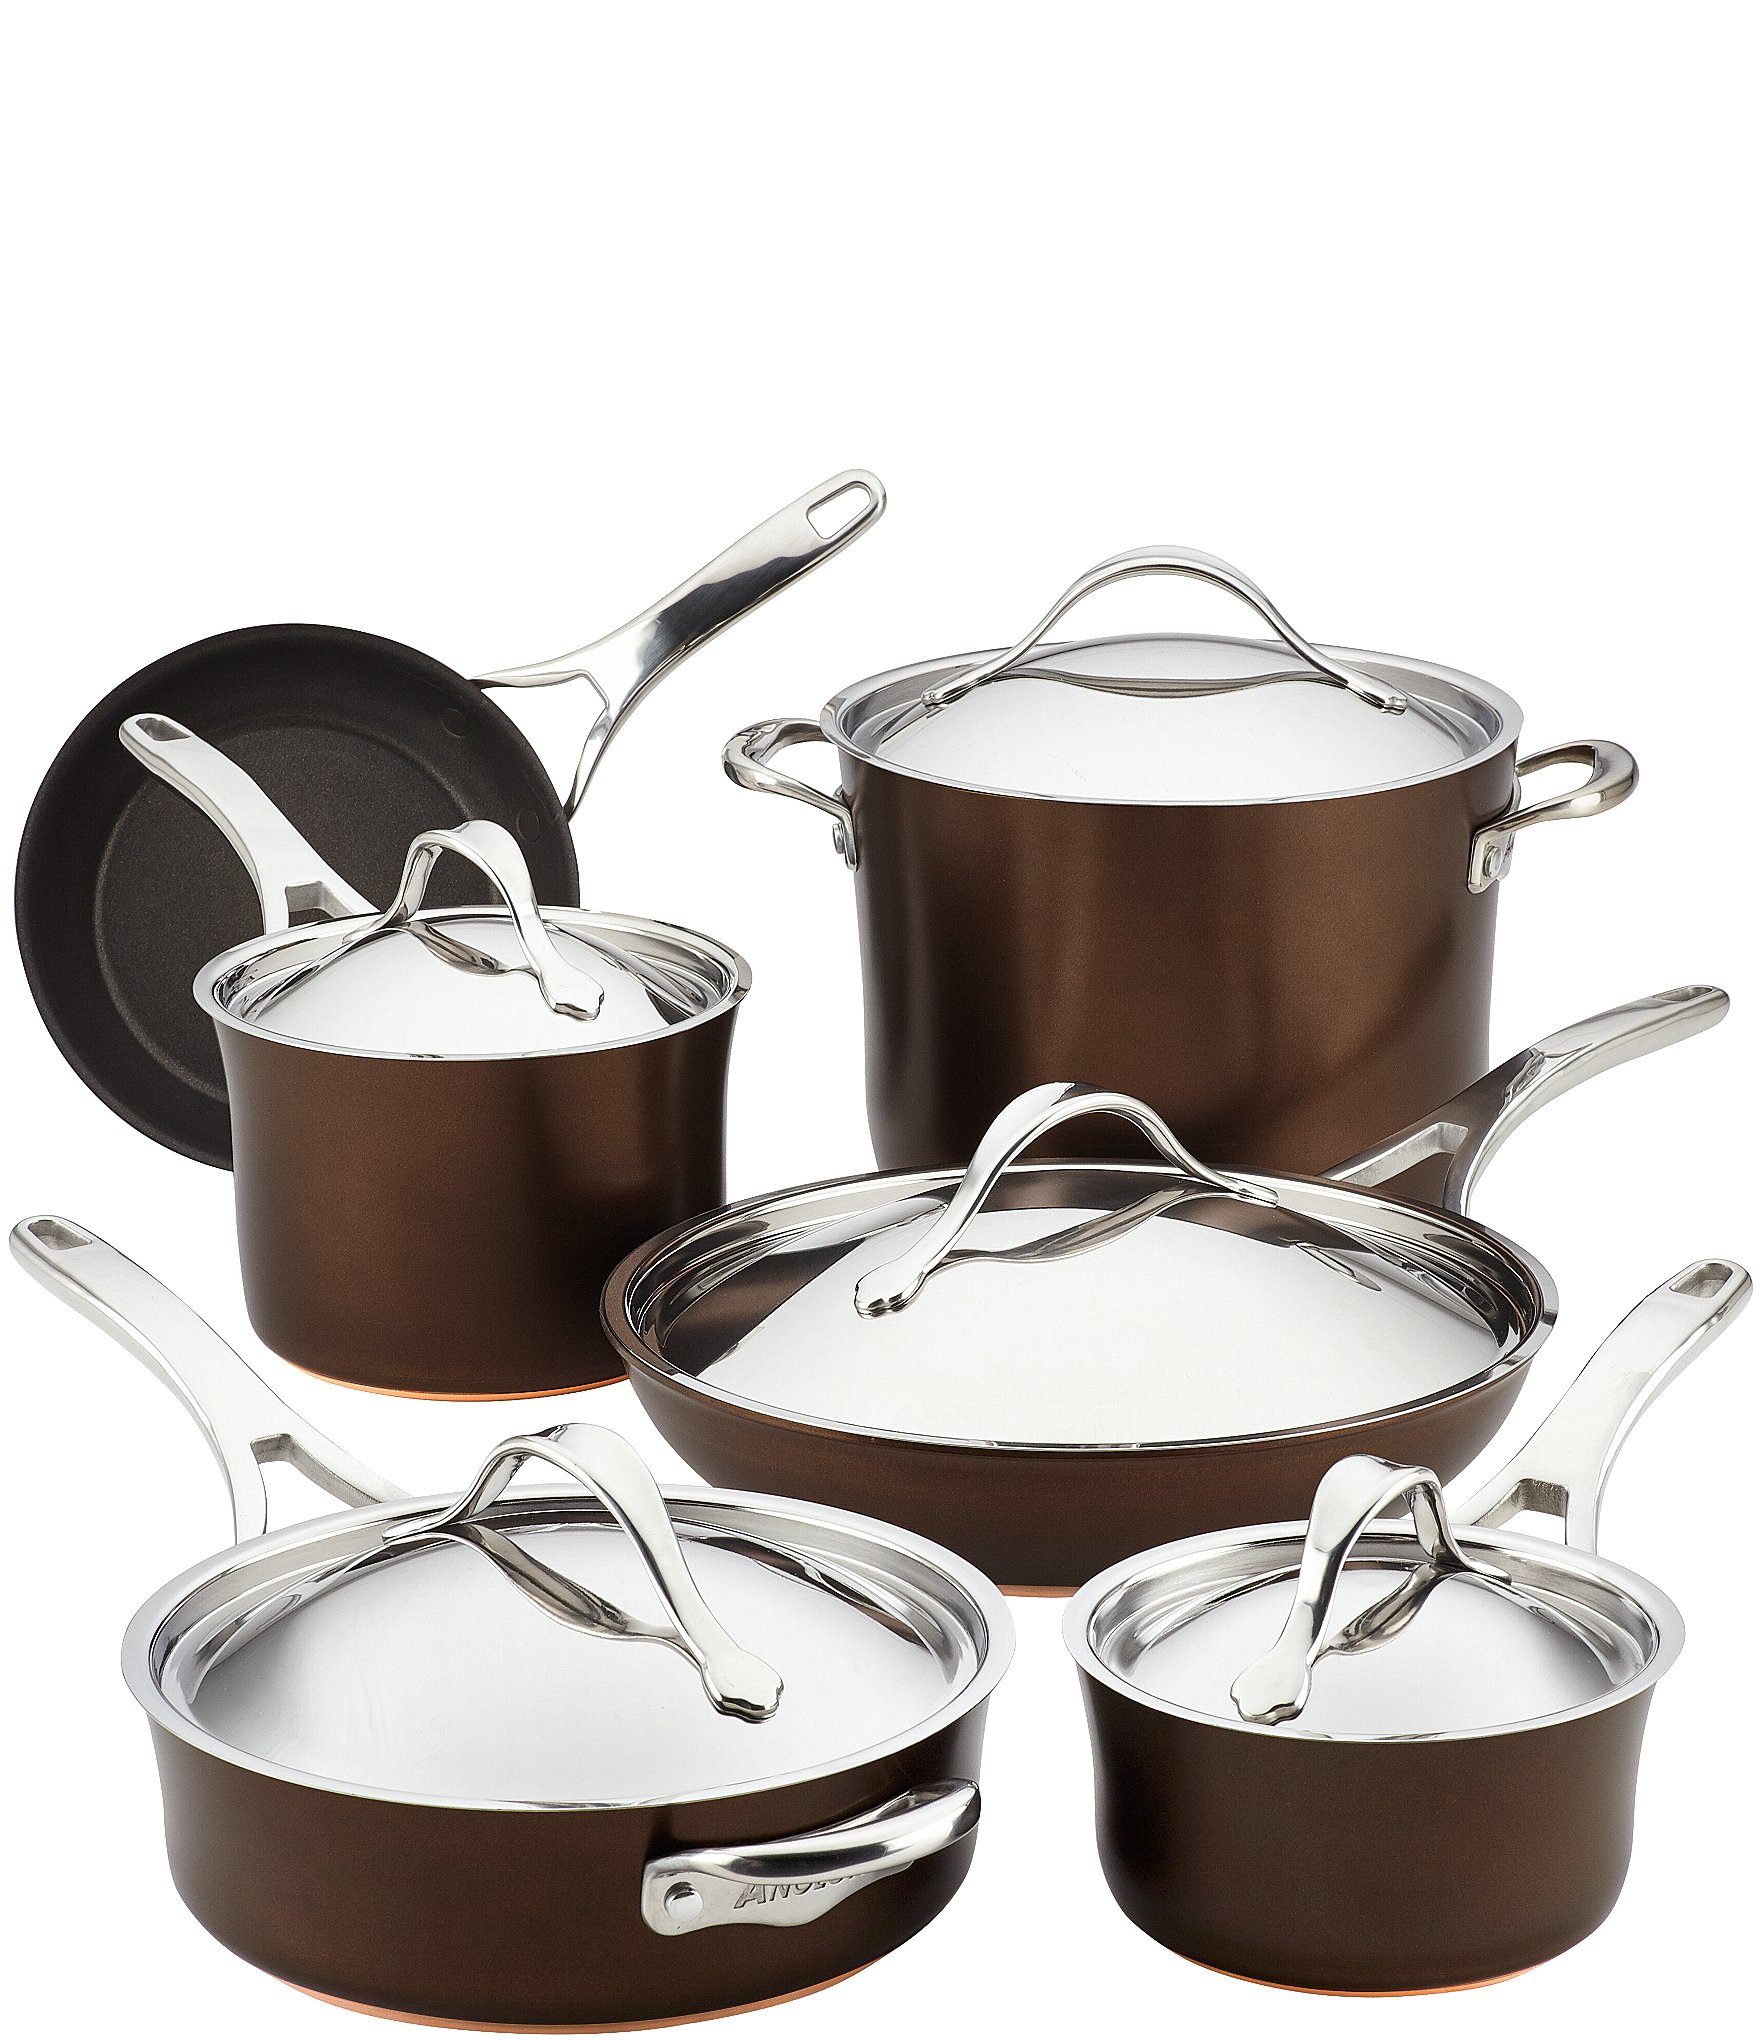 Anolon Achieve Hard Anodized Nonstick Cookware Pots and Pans Set